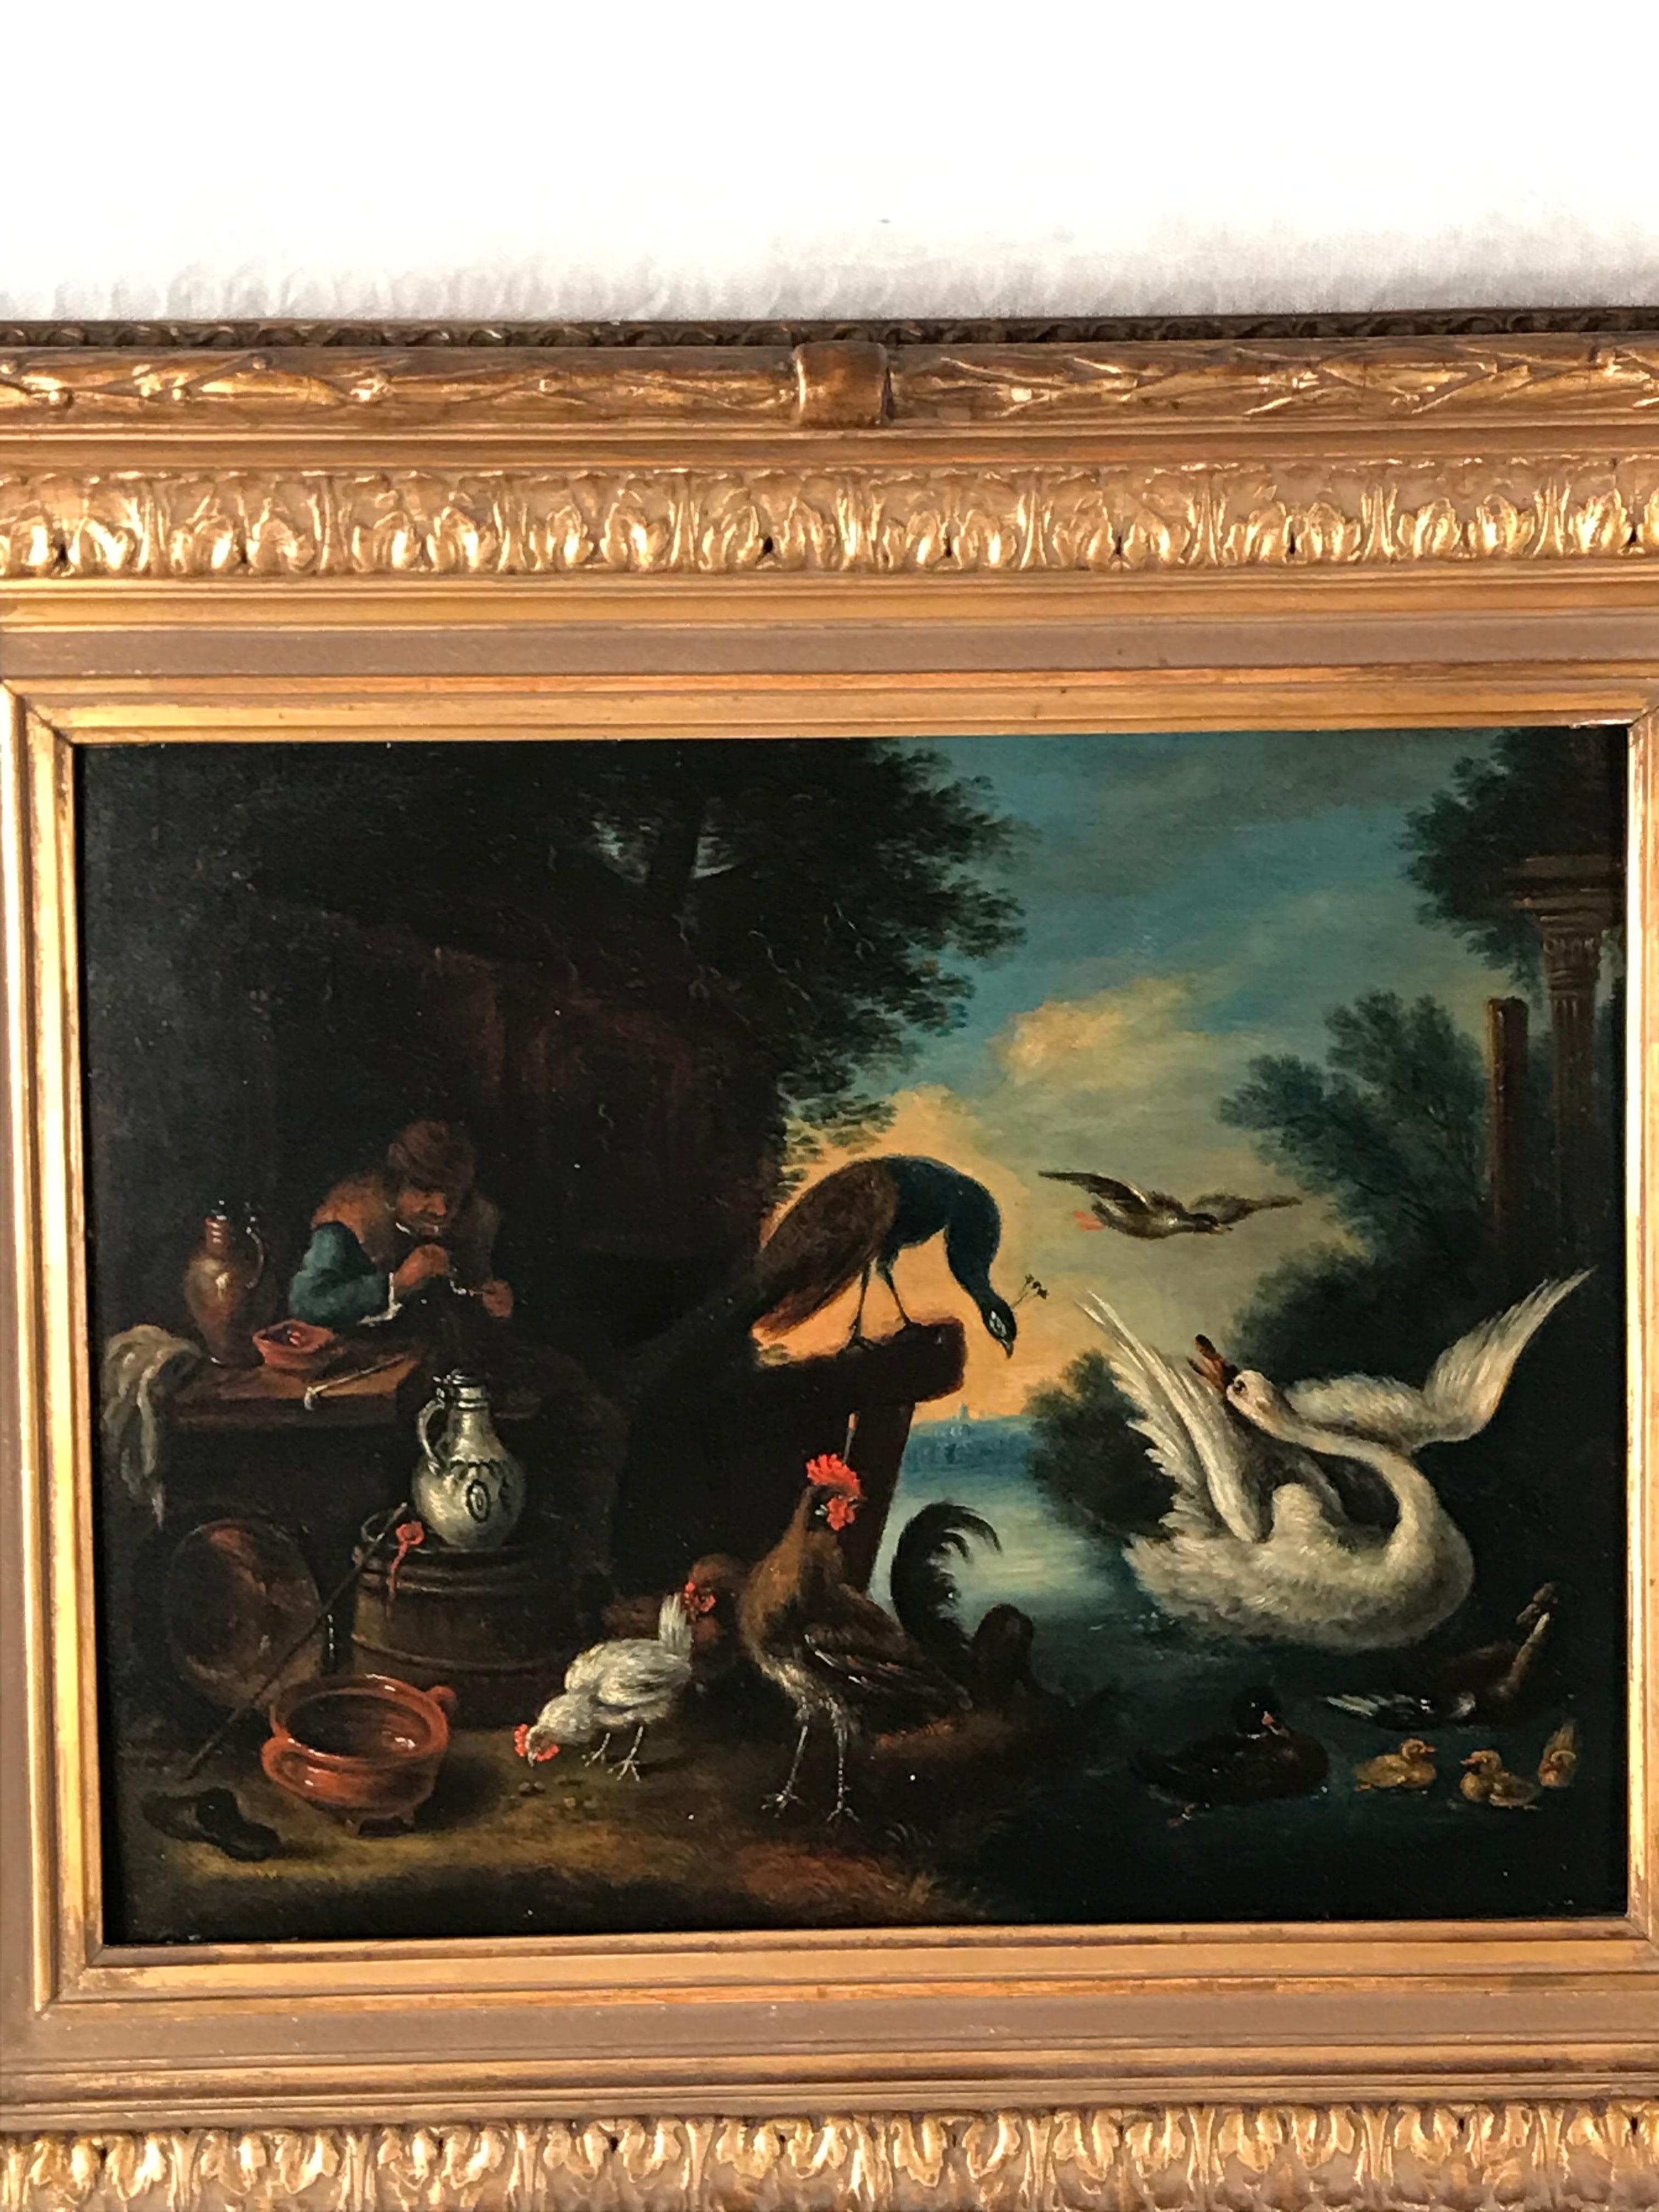 Artiste flamand inconnu, Belgique 18e siècle. Dans la partie droite du tableau, l'artiste a représenté un homme assis devant une taverne. Il est entouré de pichets et d'assiettes en faïence baroque de Delft. La partie droite de la peinture montre